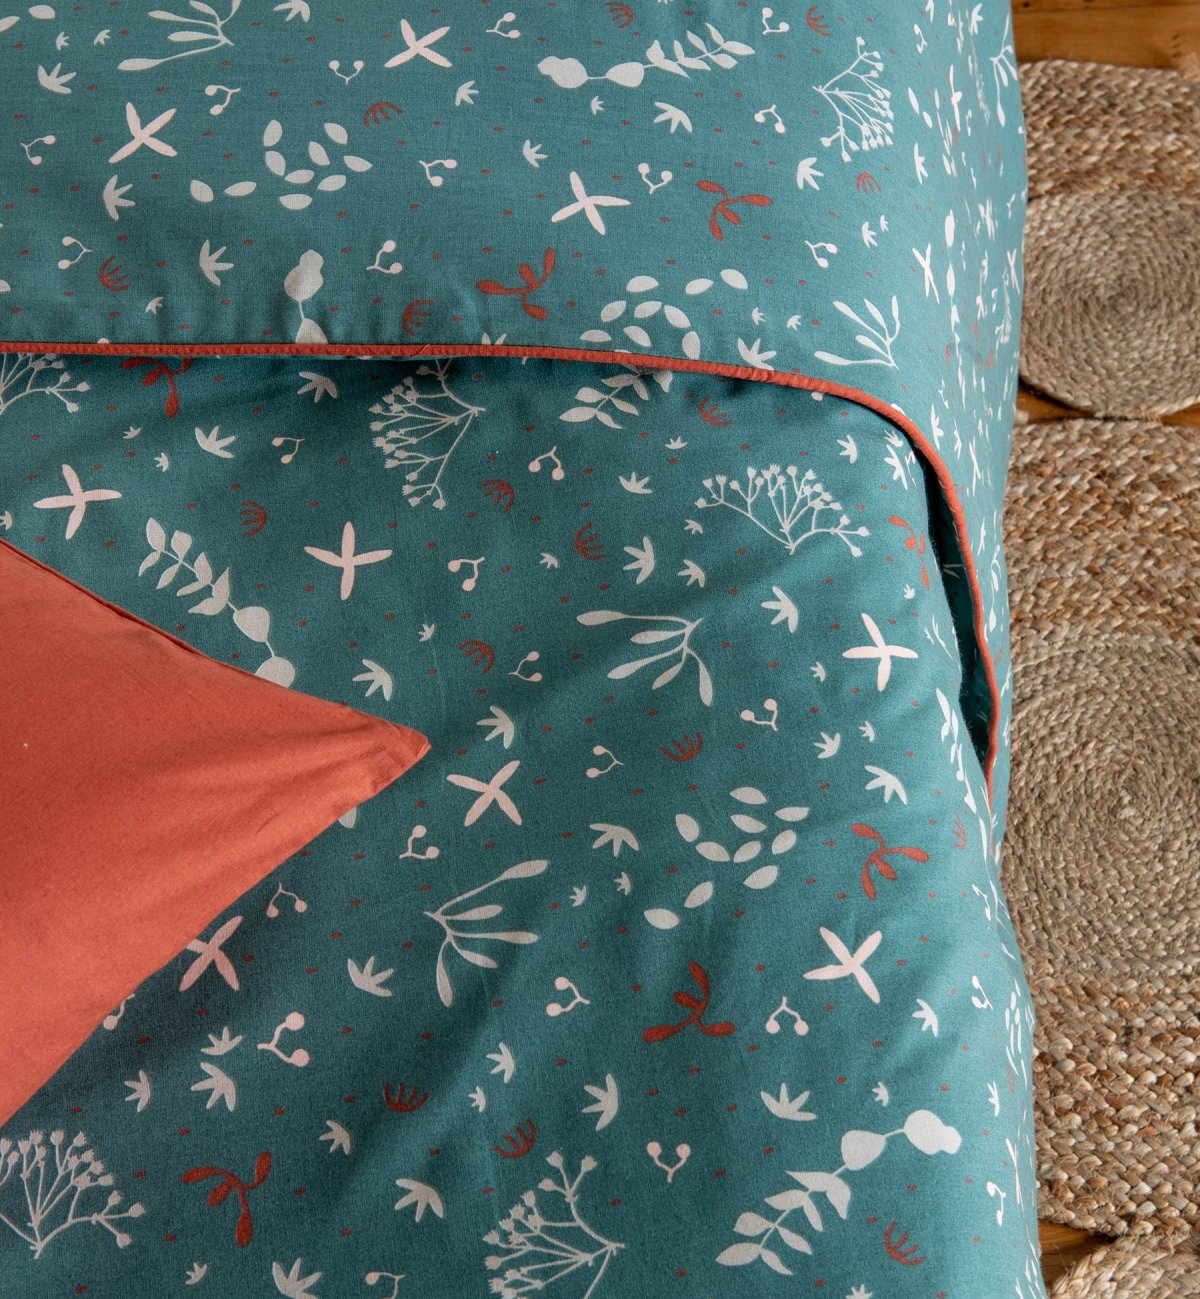 Capa de edredão de Algodão Orgânico para cama individual com padrão Ikebana